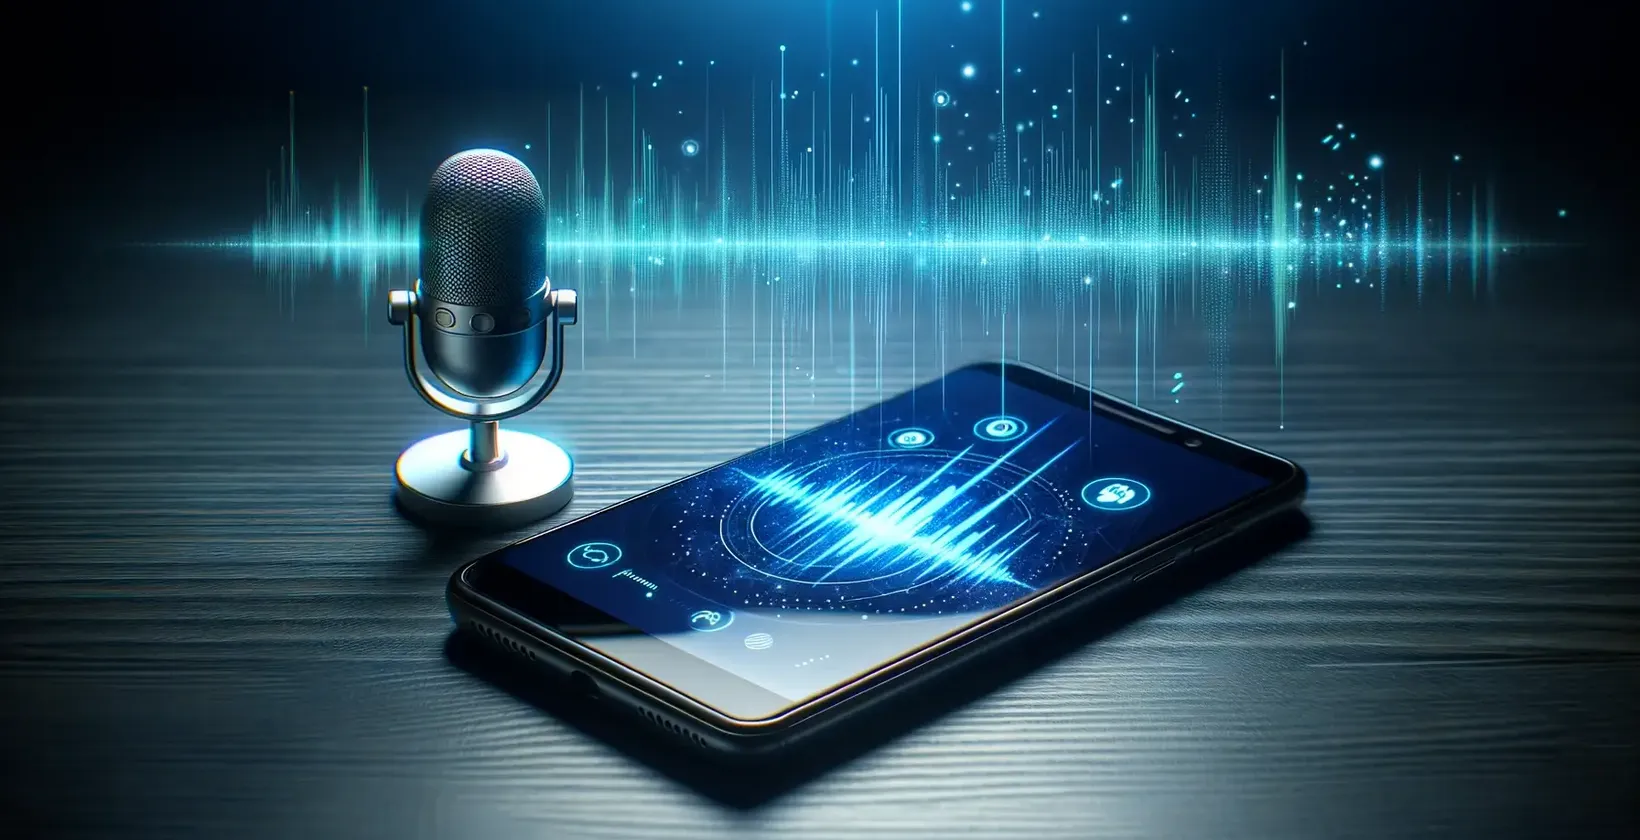 O microfone moderno fica ao lado de um smartphone que exibe gráficos vibrantes de ondas sonoras.